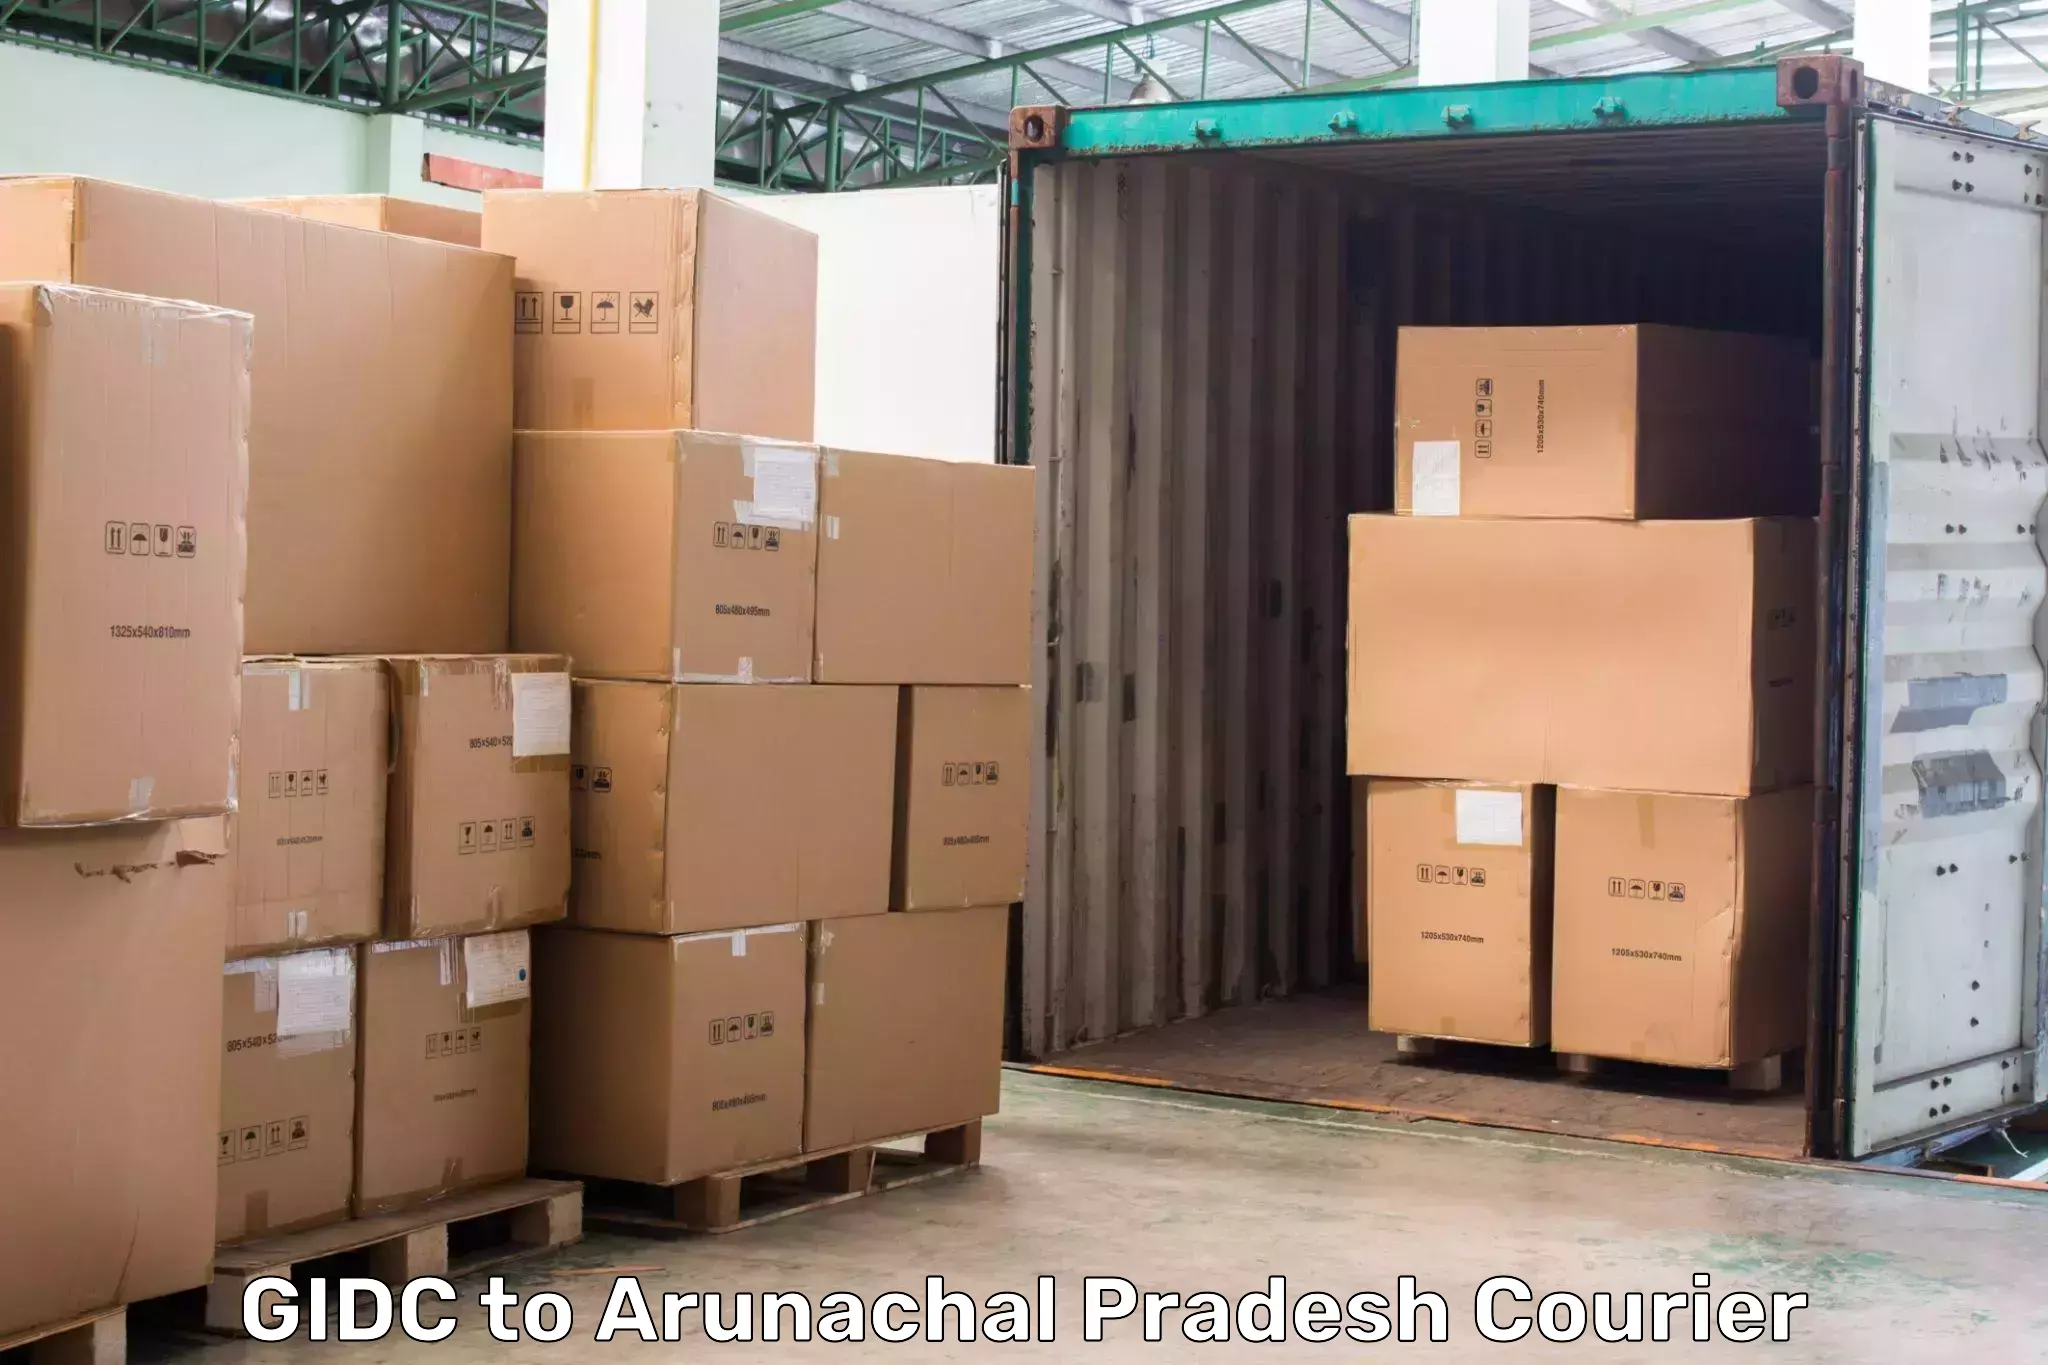 Next day courier GIDC to Arunachal Pradesh